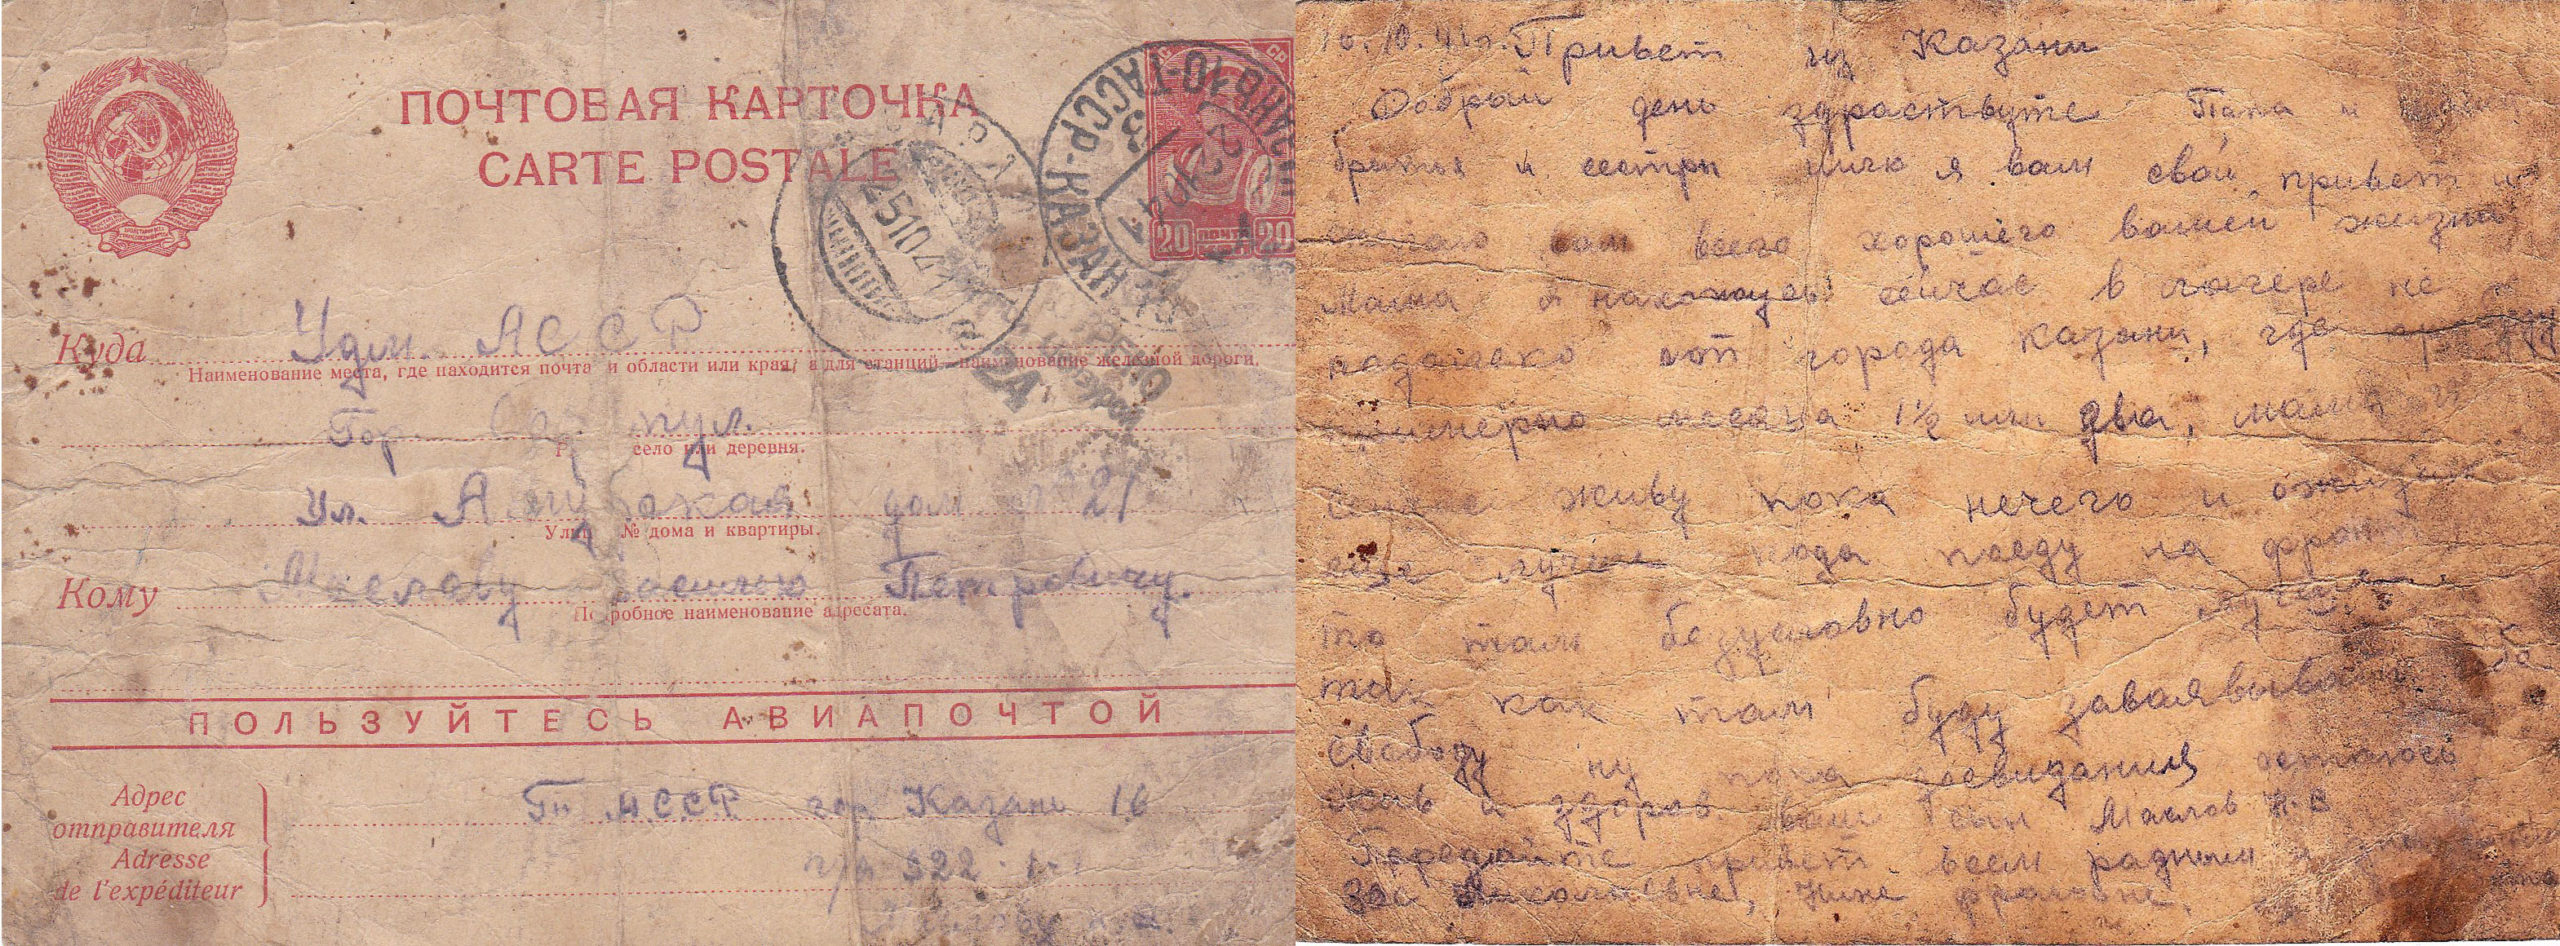 Почтовая открытка из Казани, октябрь 1941г. 